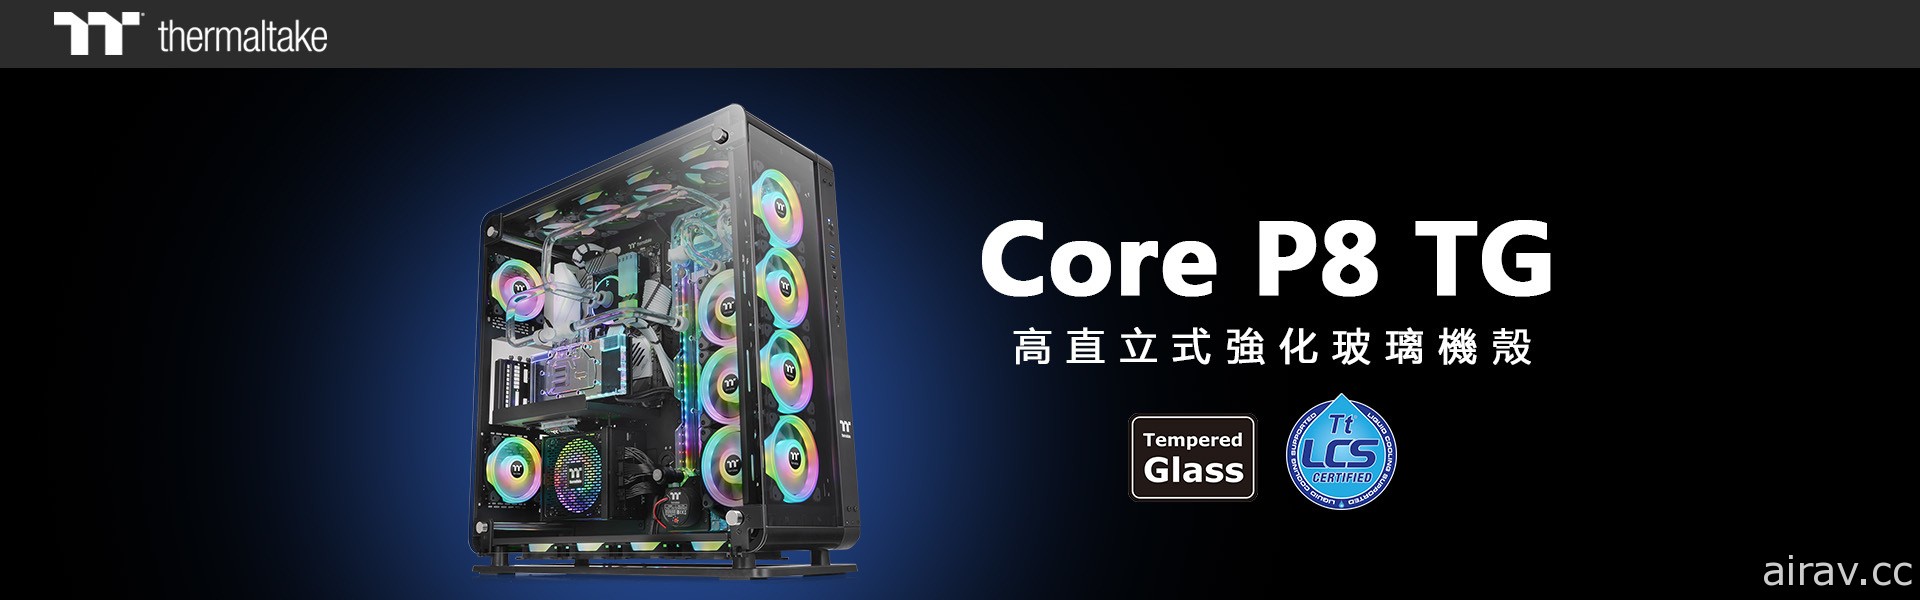 曜越推出全新 Core P8 高直立式強化玻璃機殼 可自由選擇封閉與開放雙模式